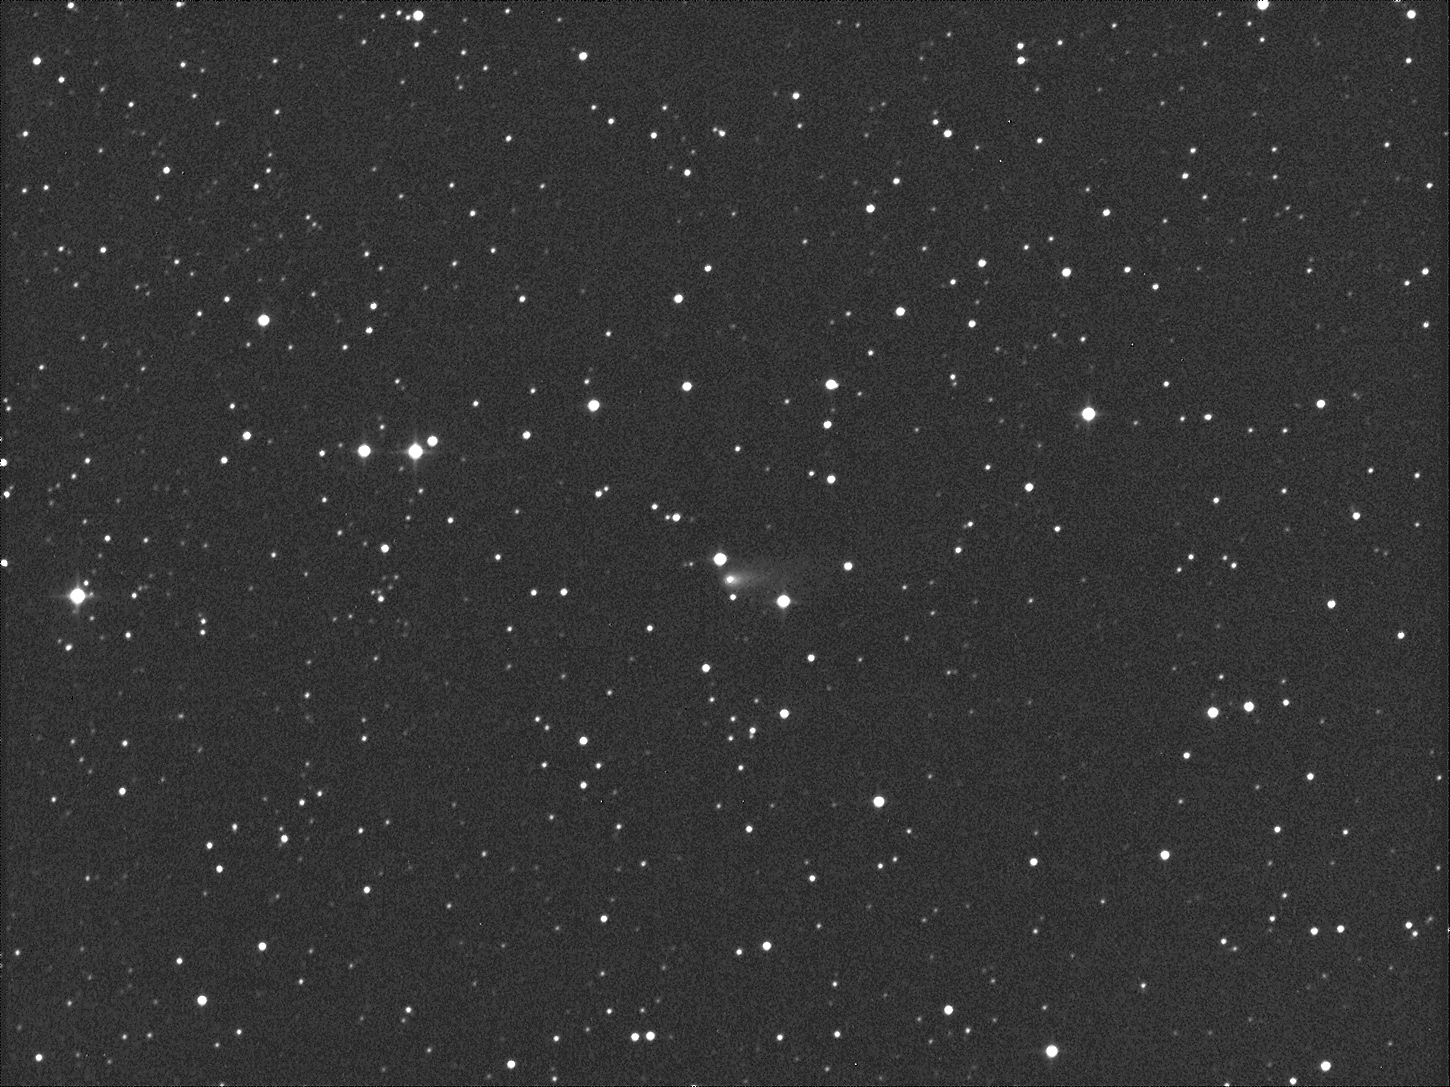 Komety vizuálně v době novu 1. 9. 2016